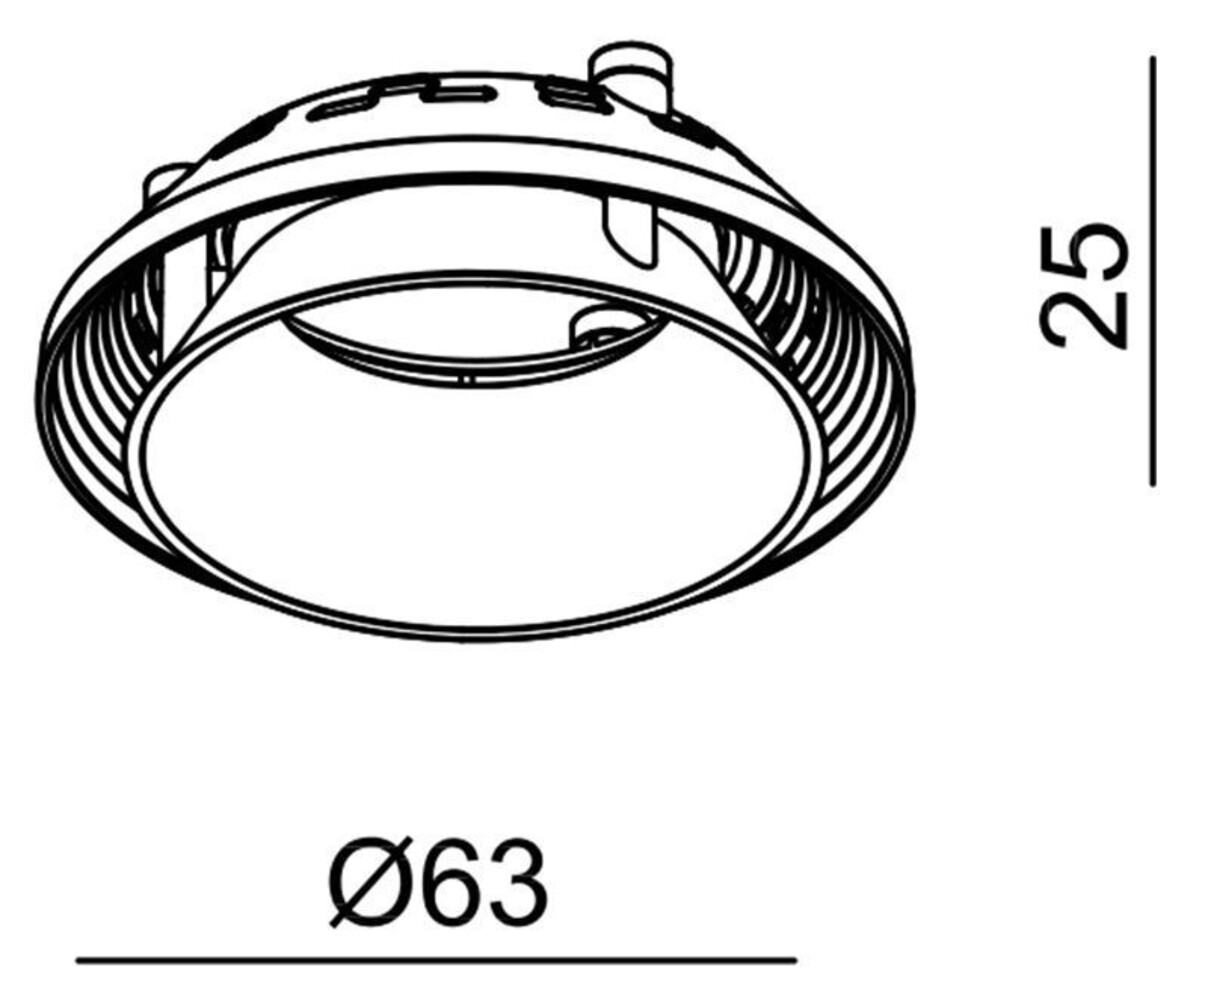 Hochwertiges Deko-Light Zubehör Reflektor Ring II in elegantem Schwarz